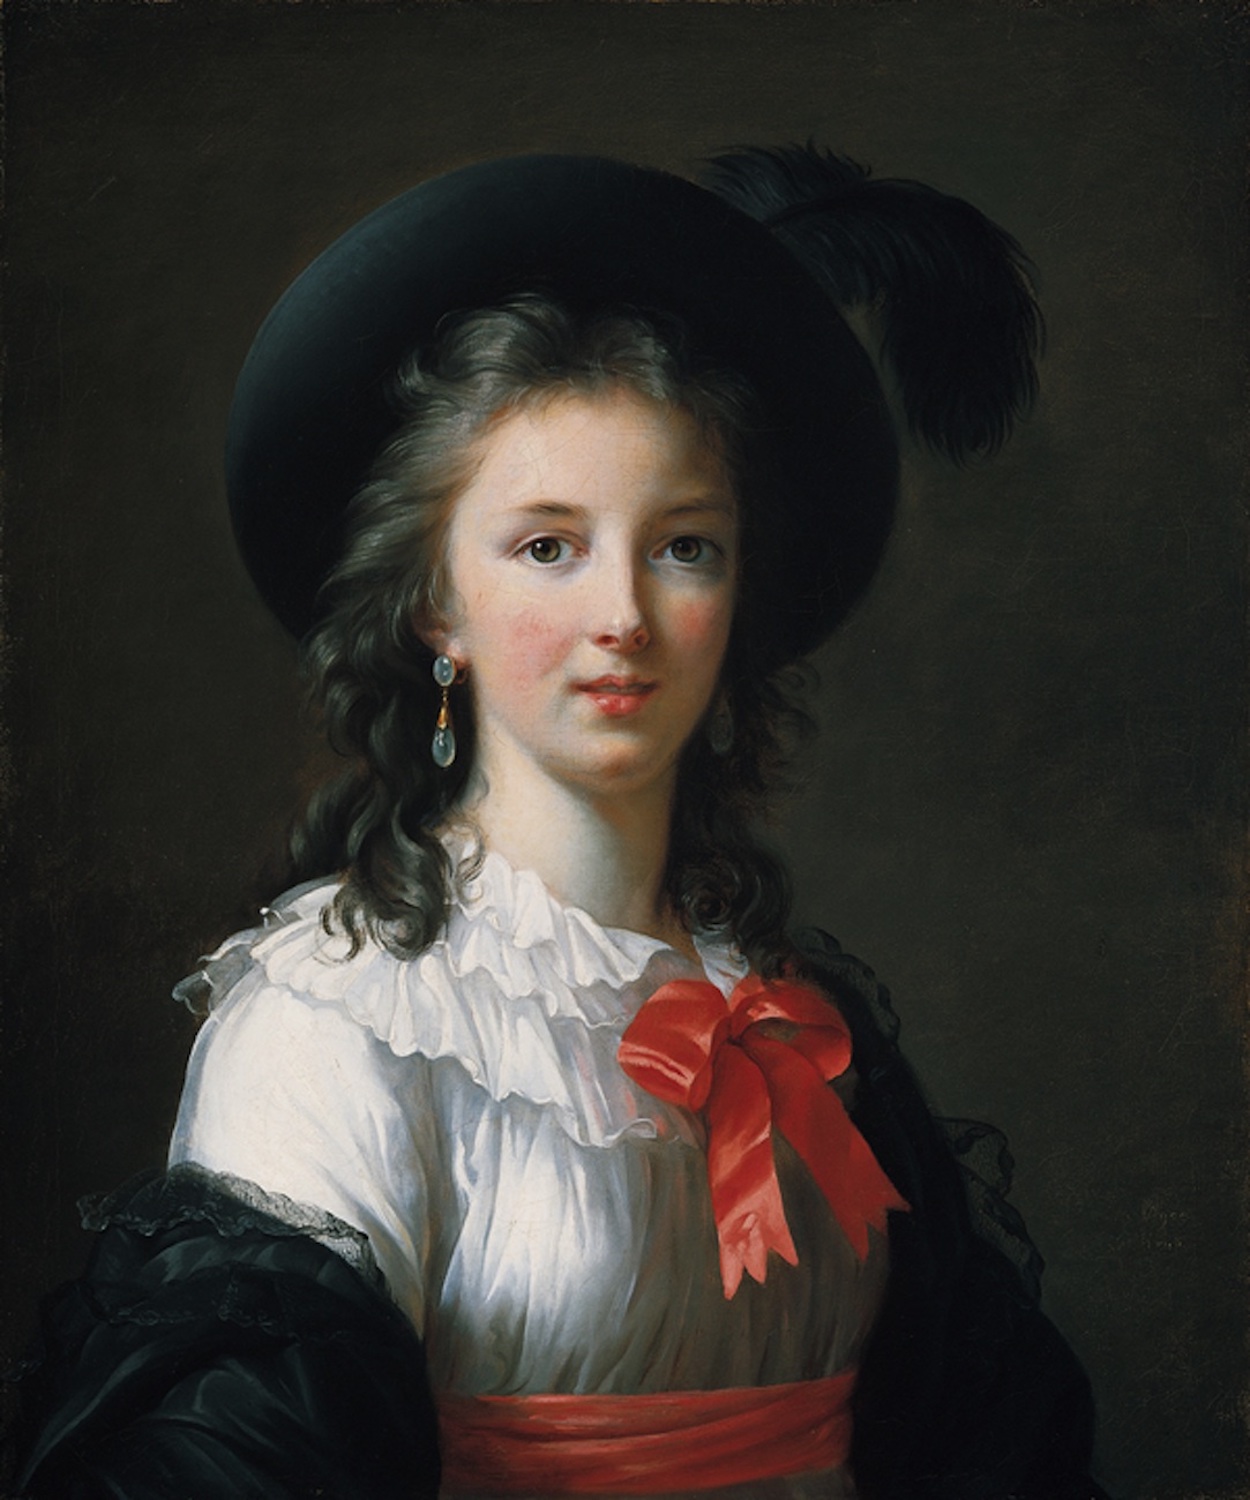 Autoportret by Élisabeth Vigee Le Brun - c. 1781 - 64,8 x 54 cm 